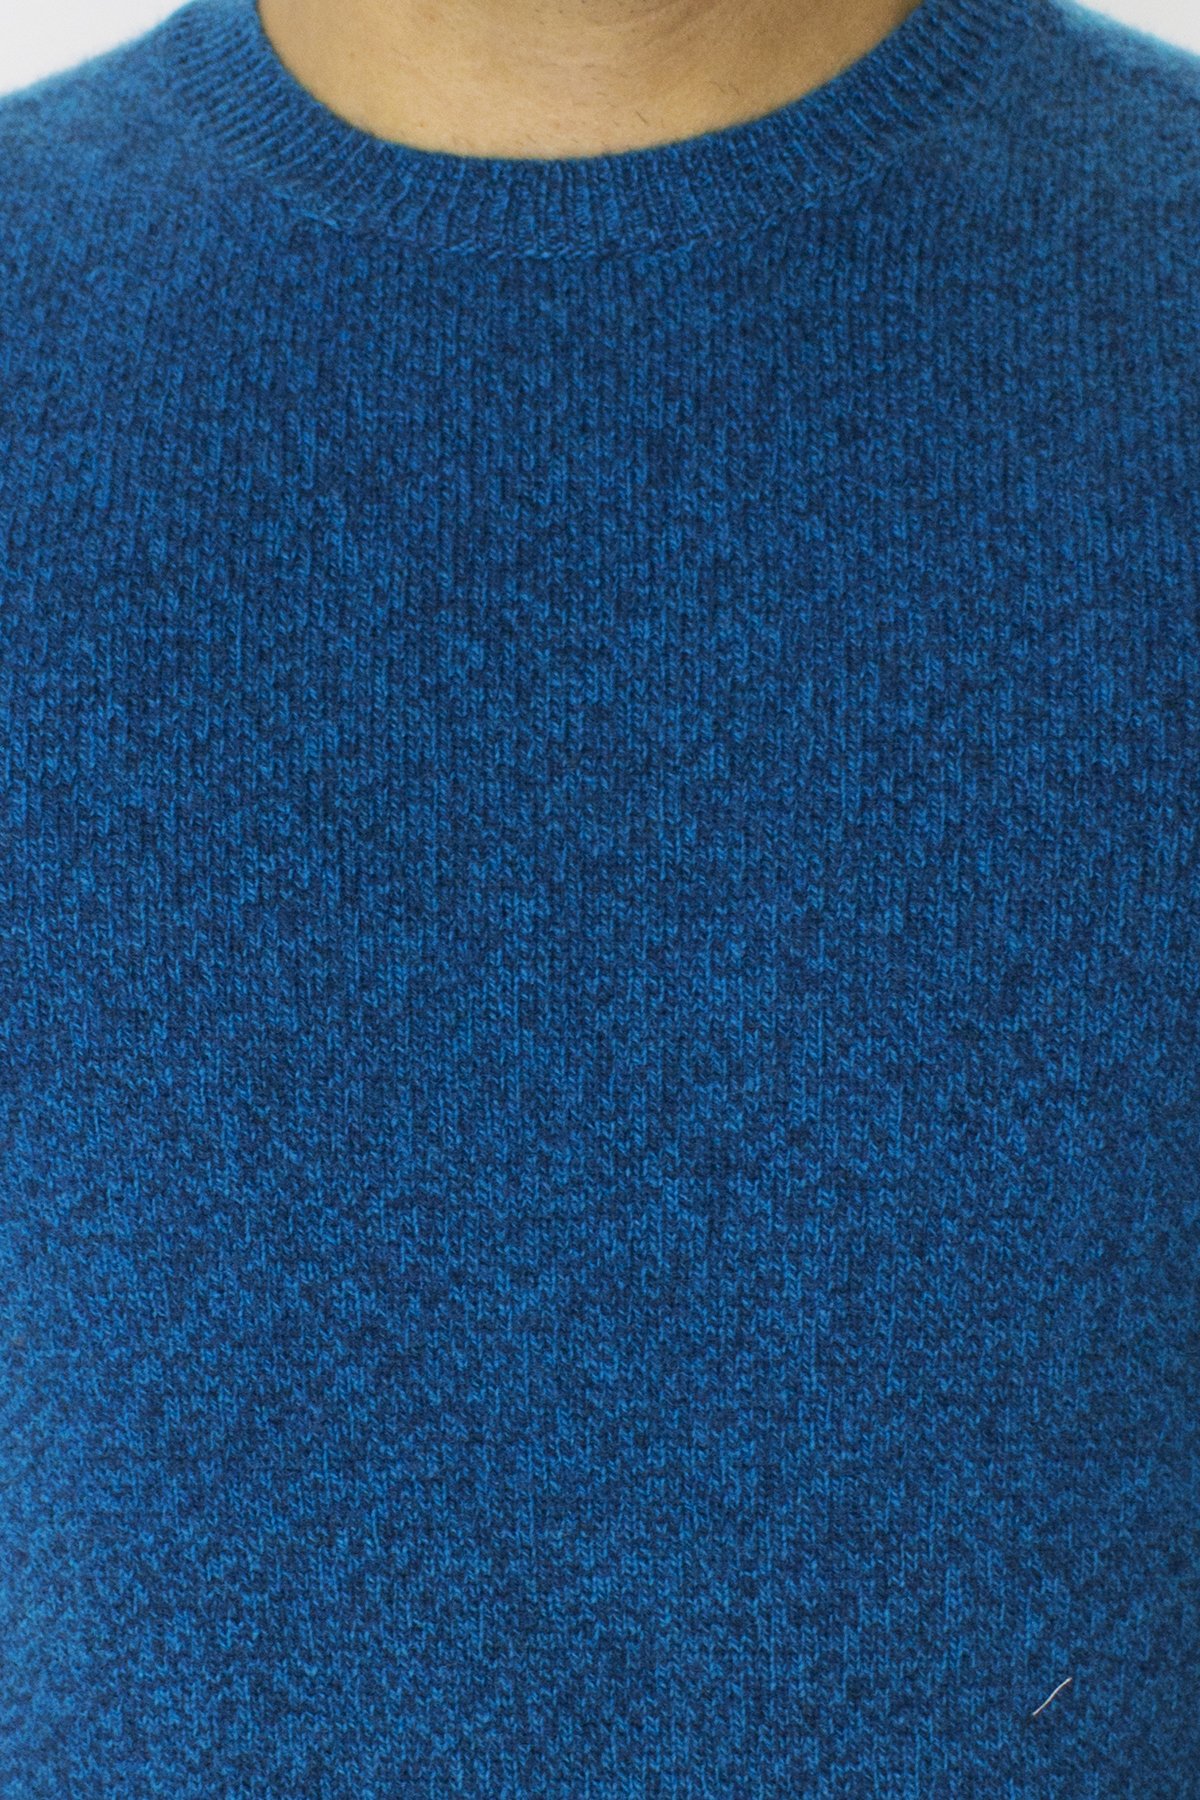 Maglione uomo Girocollo turchese effetto melange blu in lana 100% slim fit